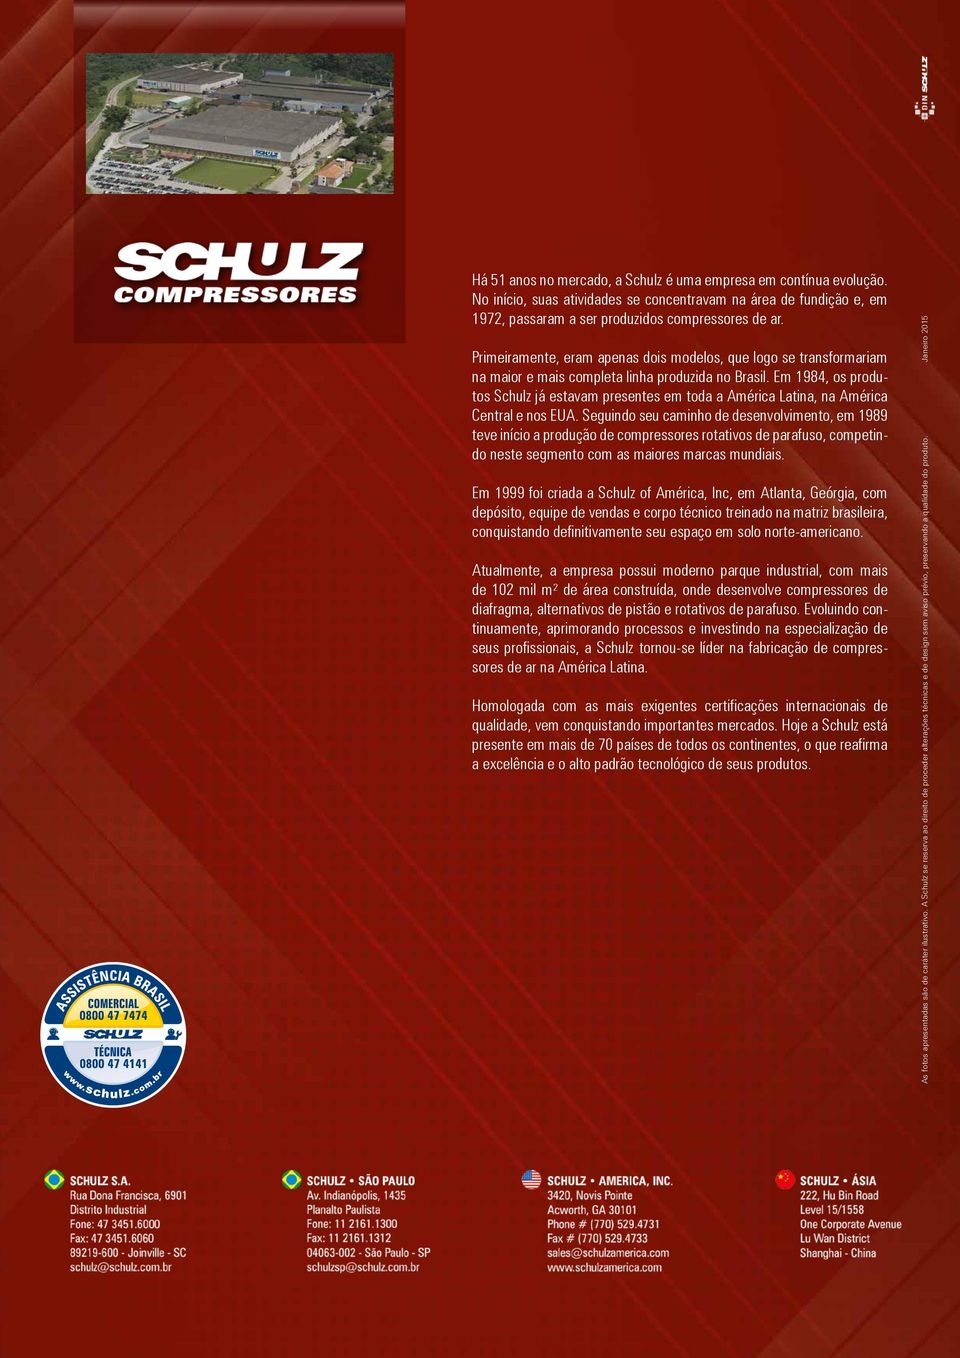 Em 1984, os produtos Schulz já estavam presentes em toda a América Latina, na América Central e nos EUA.